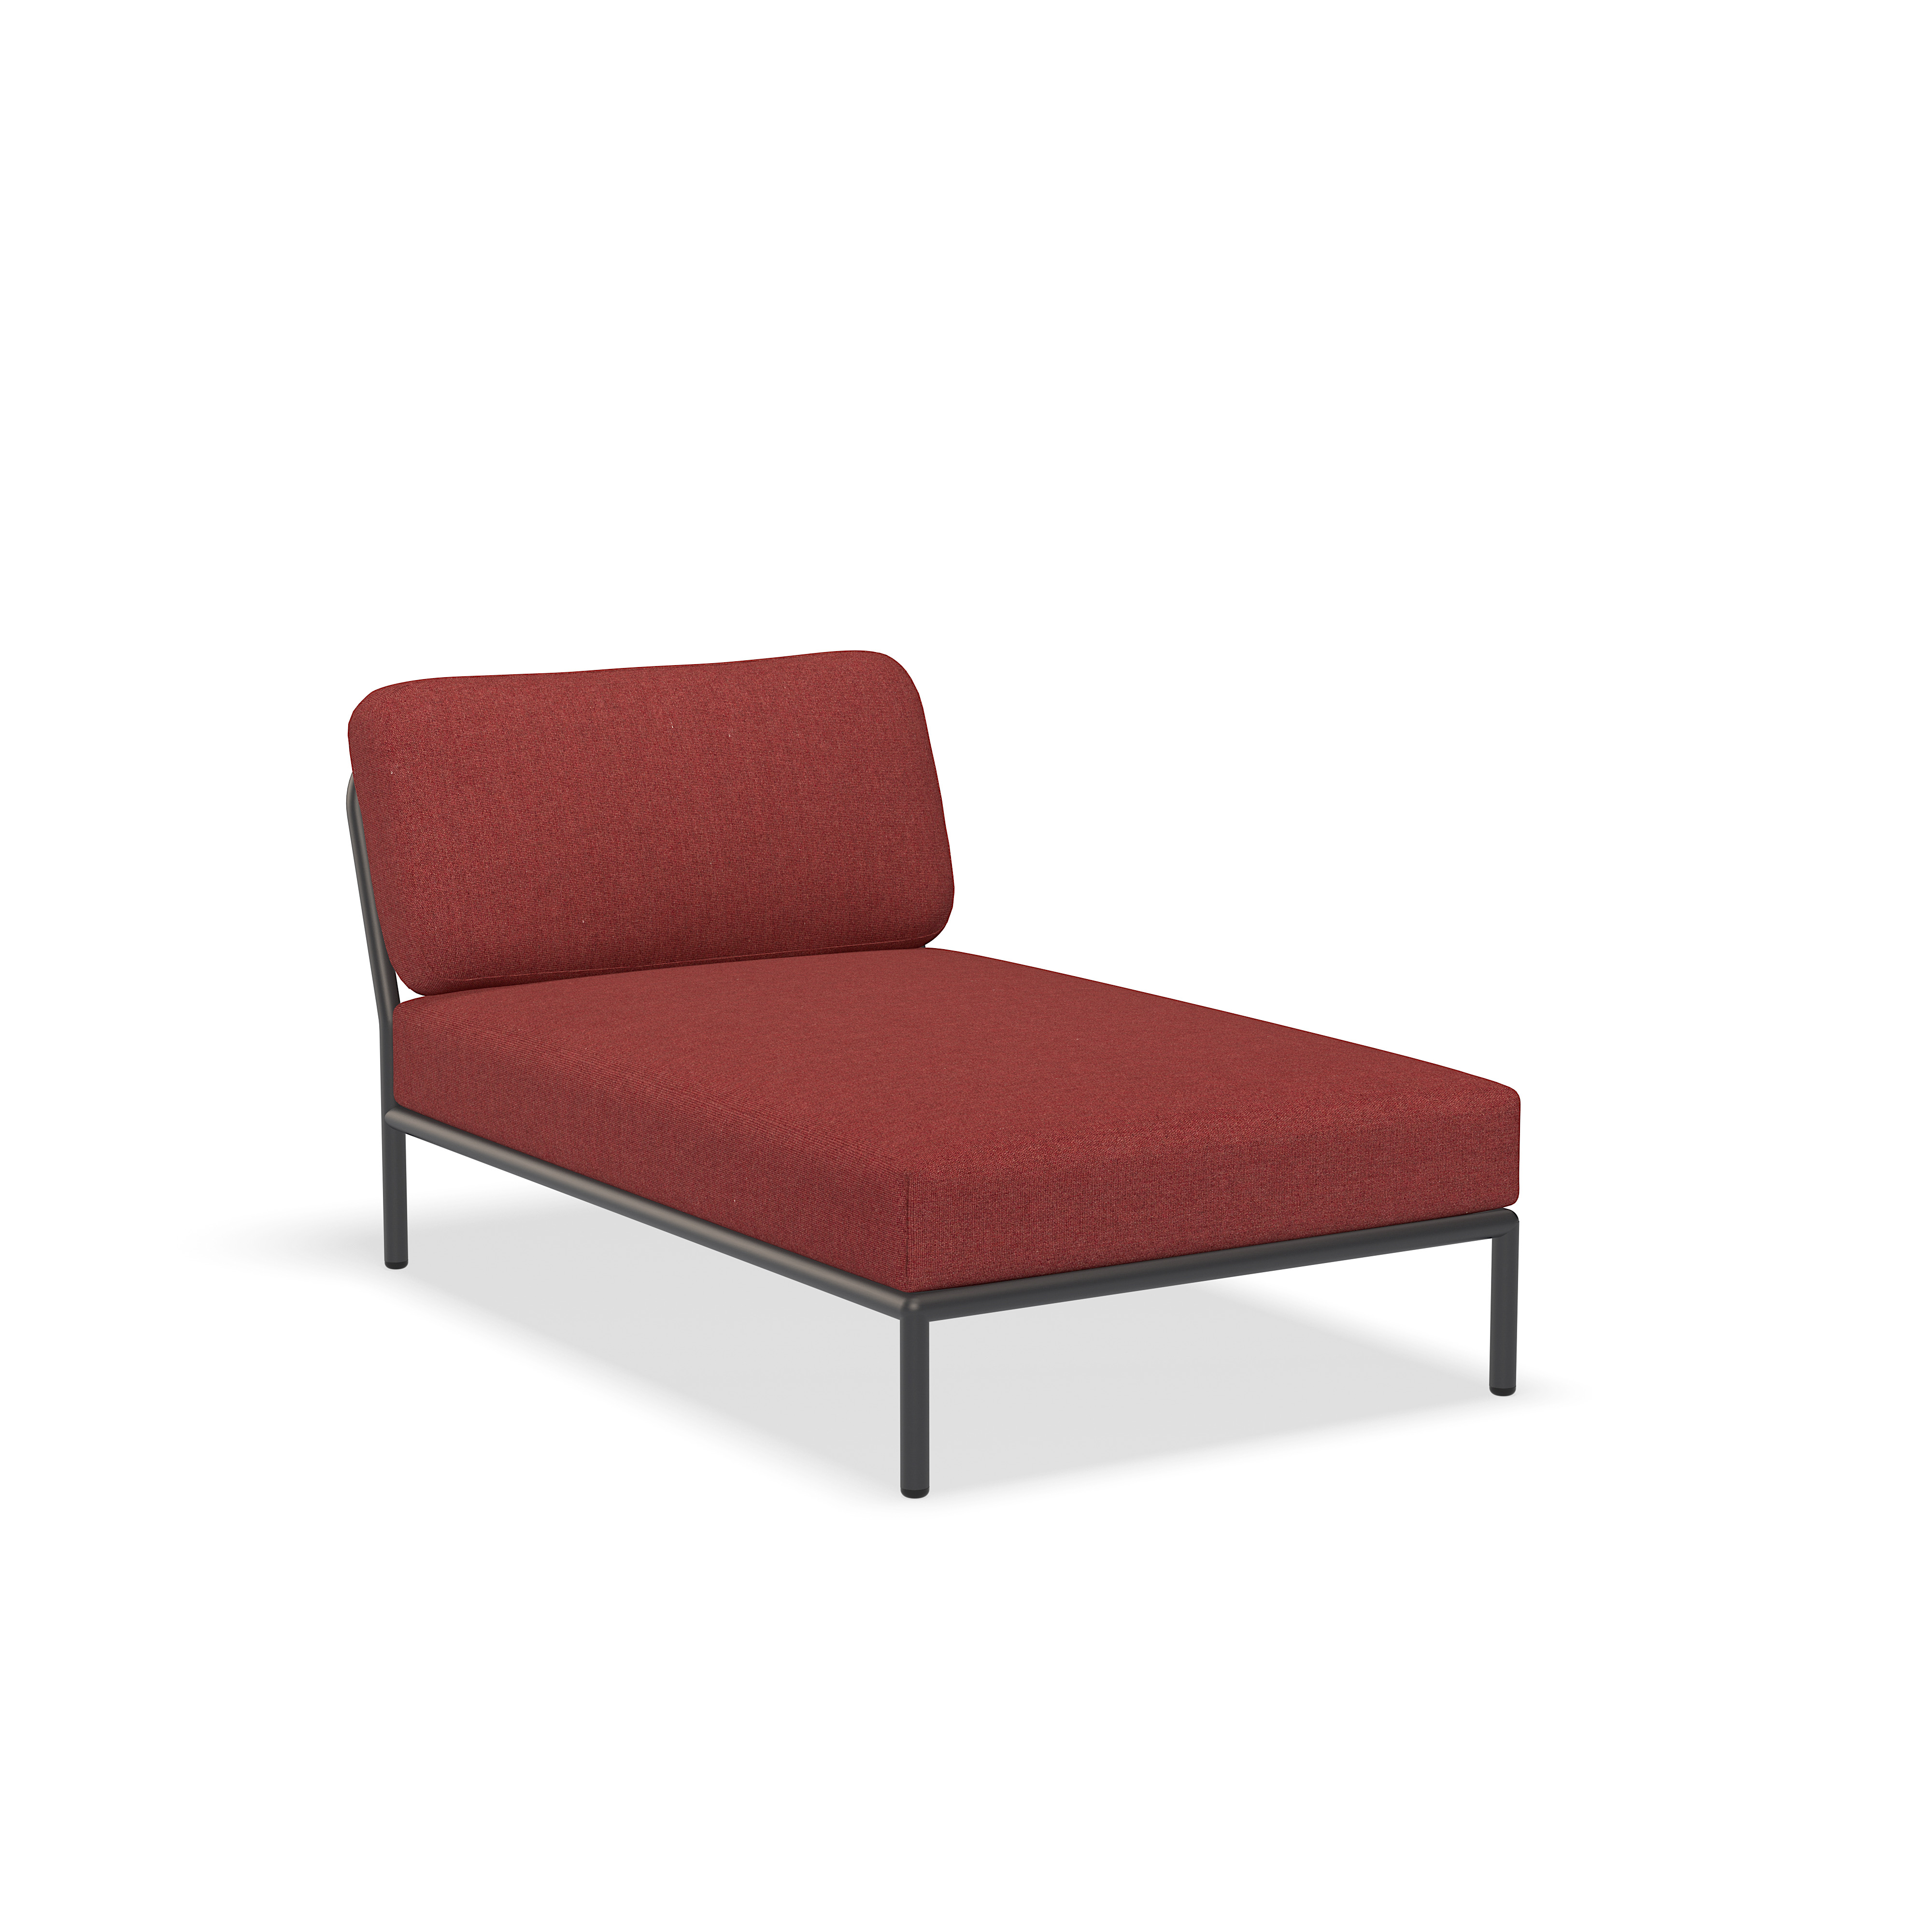 Πολυθρόνα - 12209-1651 - Πολυθρόνα, Κόκκινο (HERITAGE), σκούρα γκρι δομή